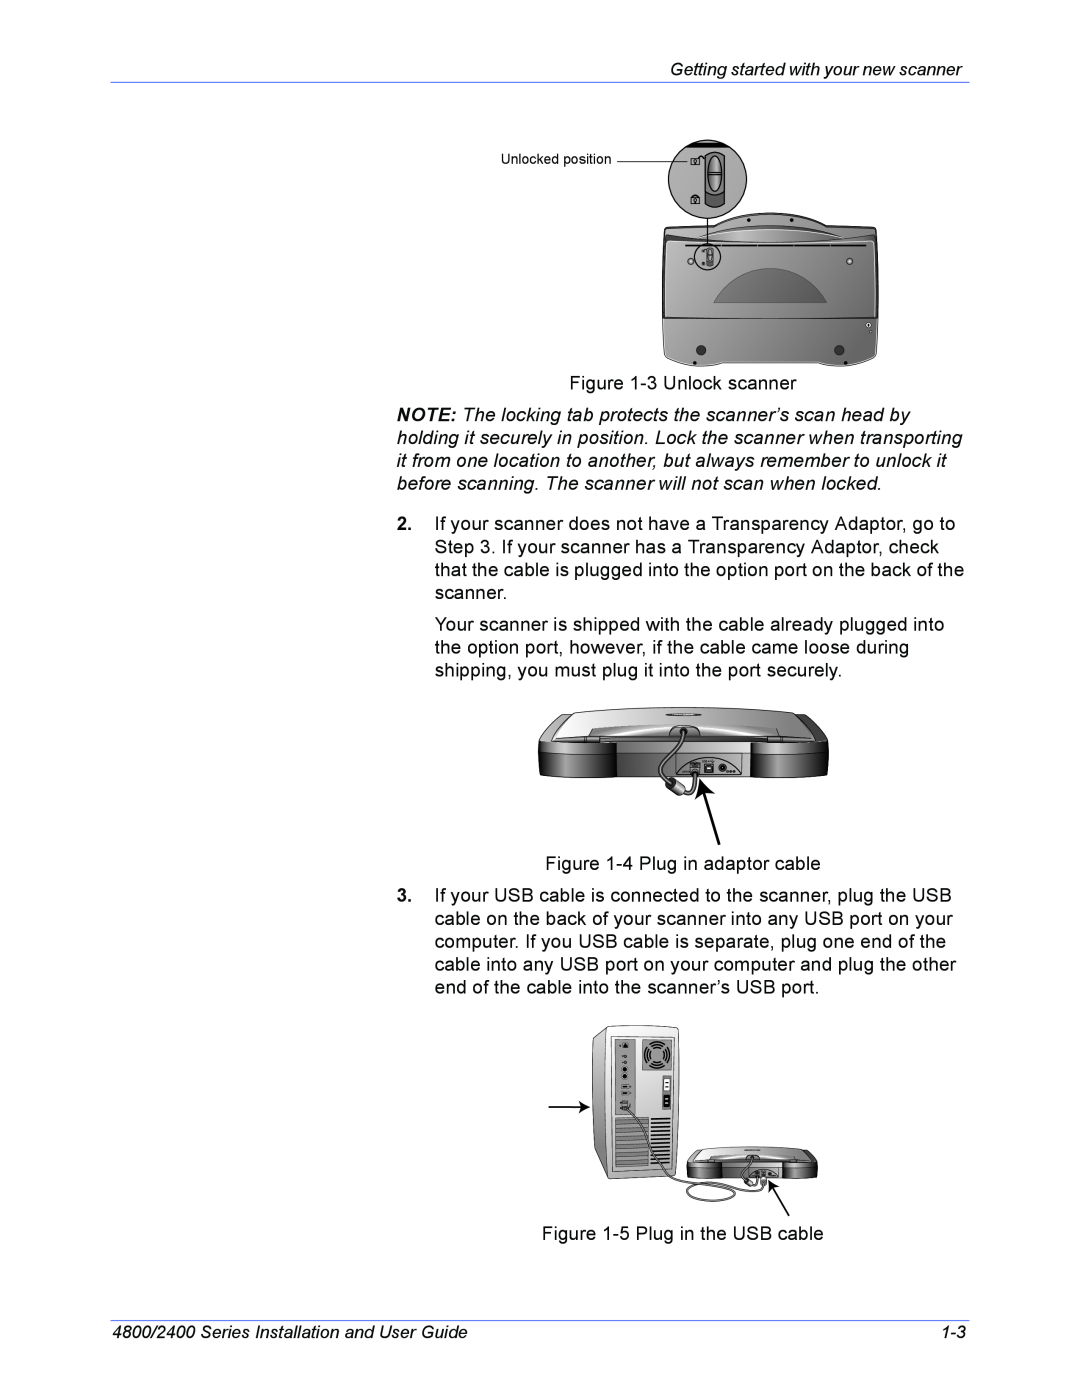 Xerox 2400, 4800 manual 3 Unlock scanner 